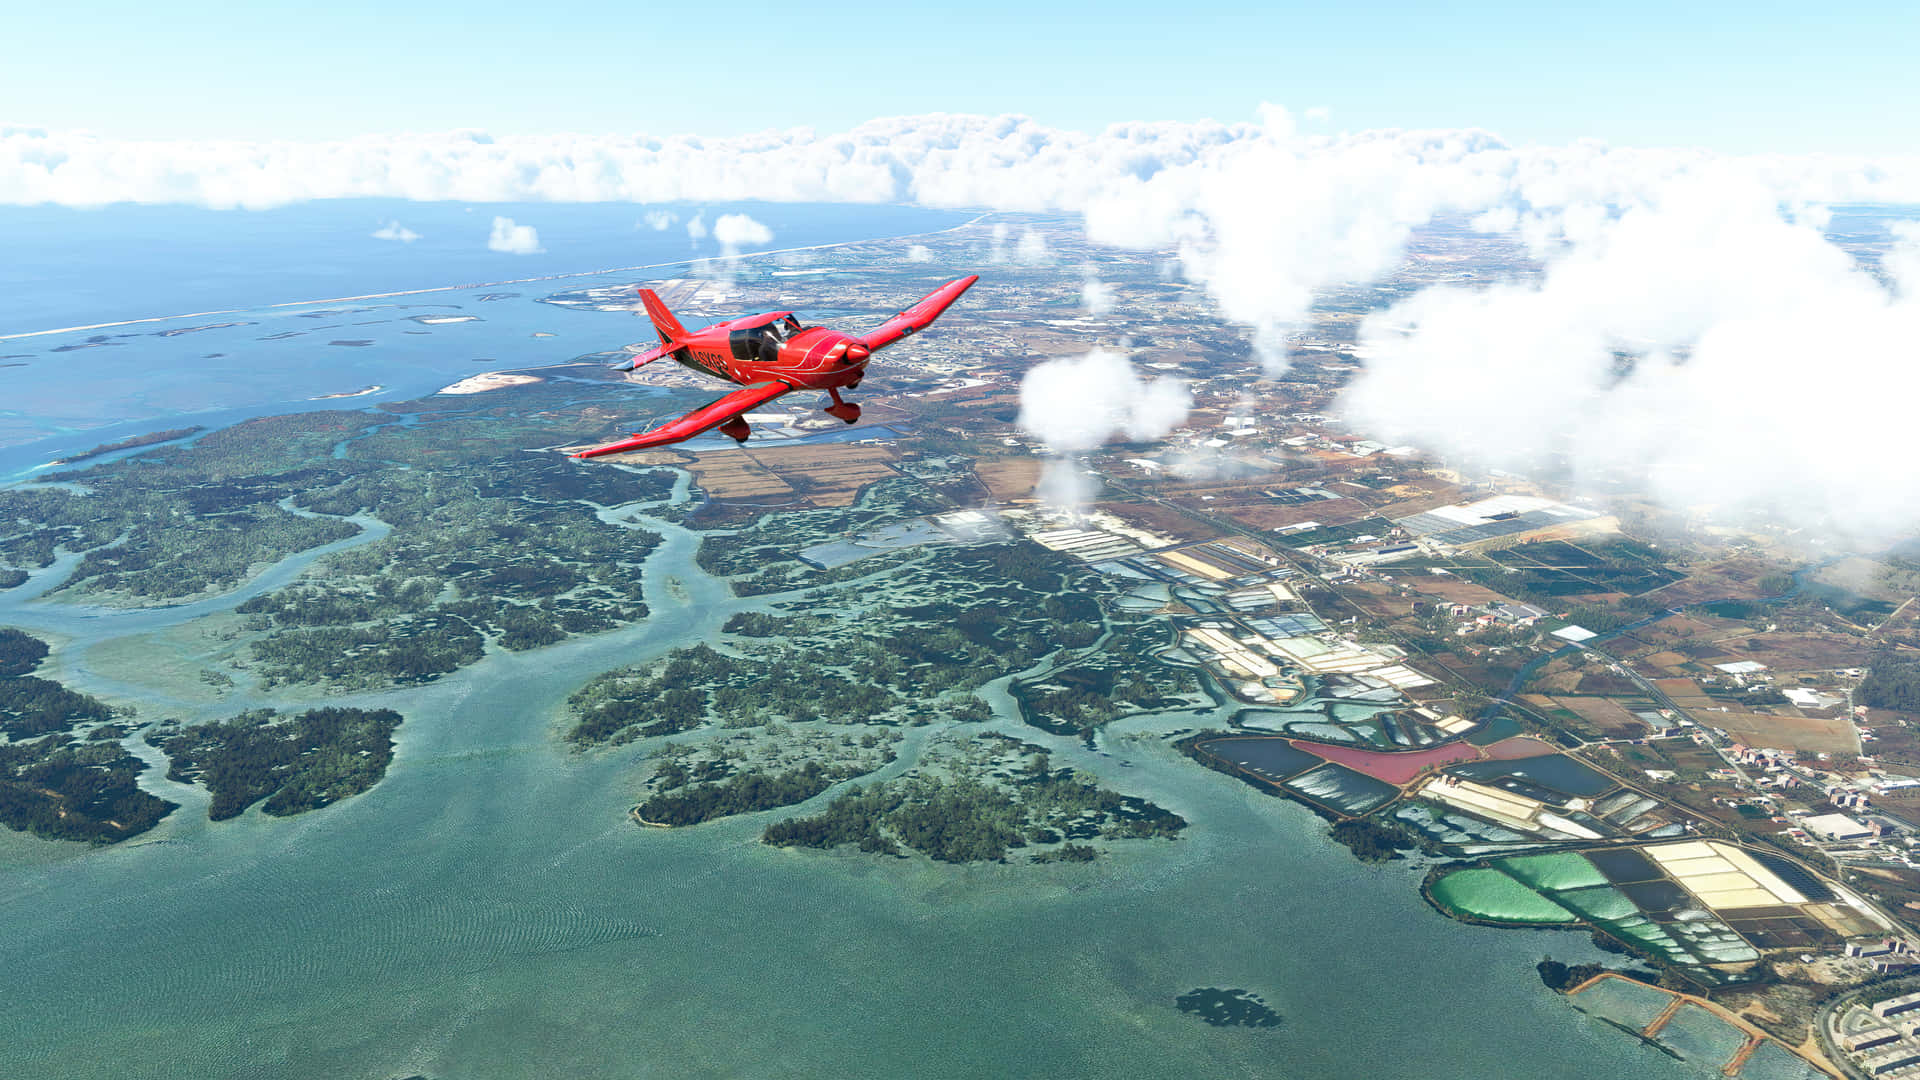 Meravigliosavisualizzazione In Risoluzione 4k Dell'azione Di Microsoft Flight Simulator.